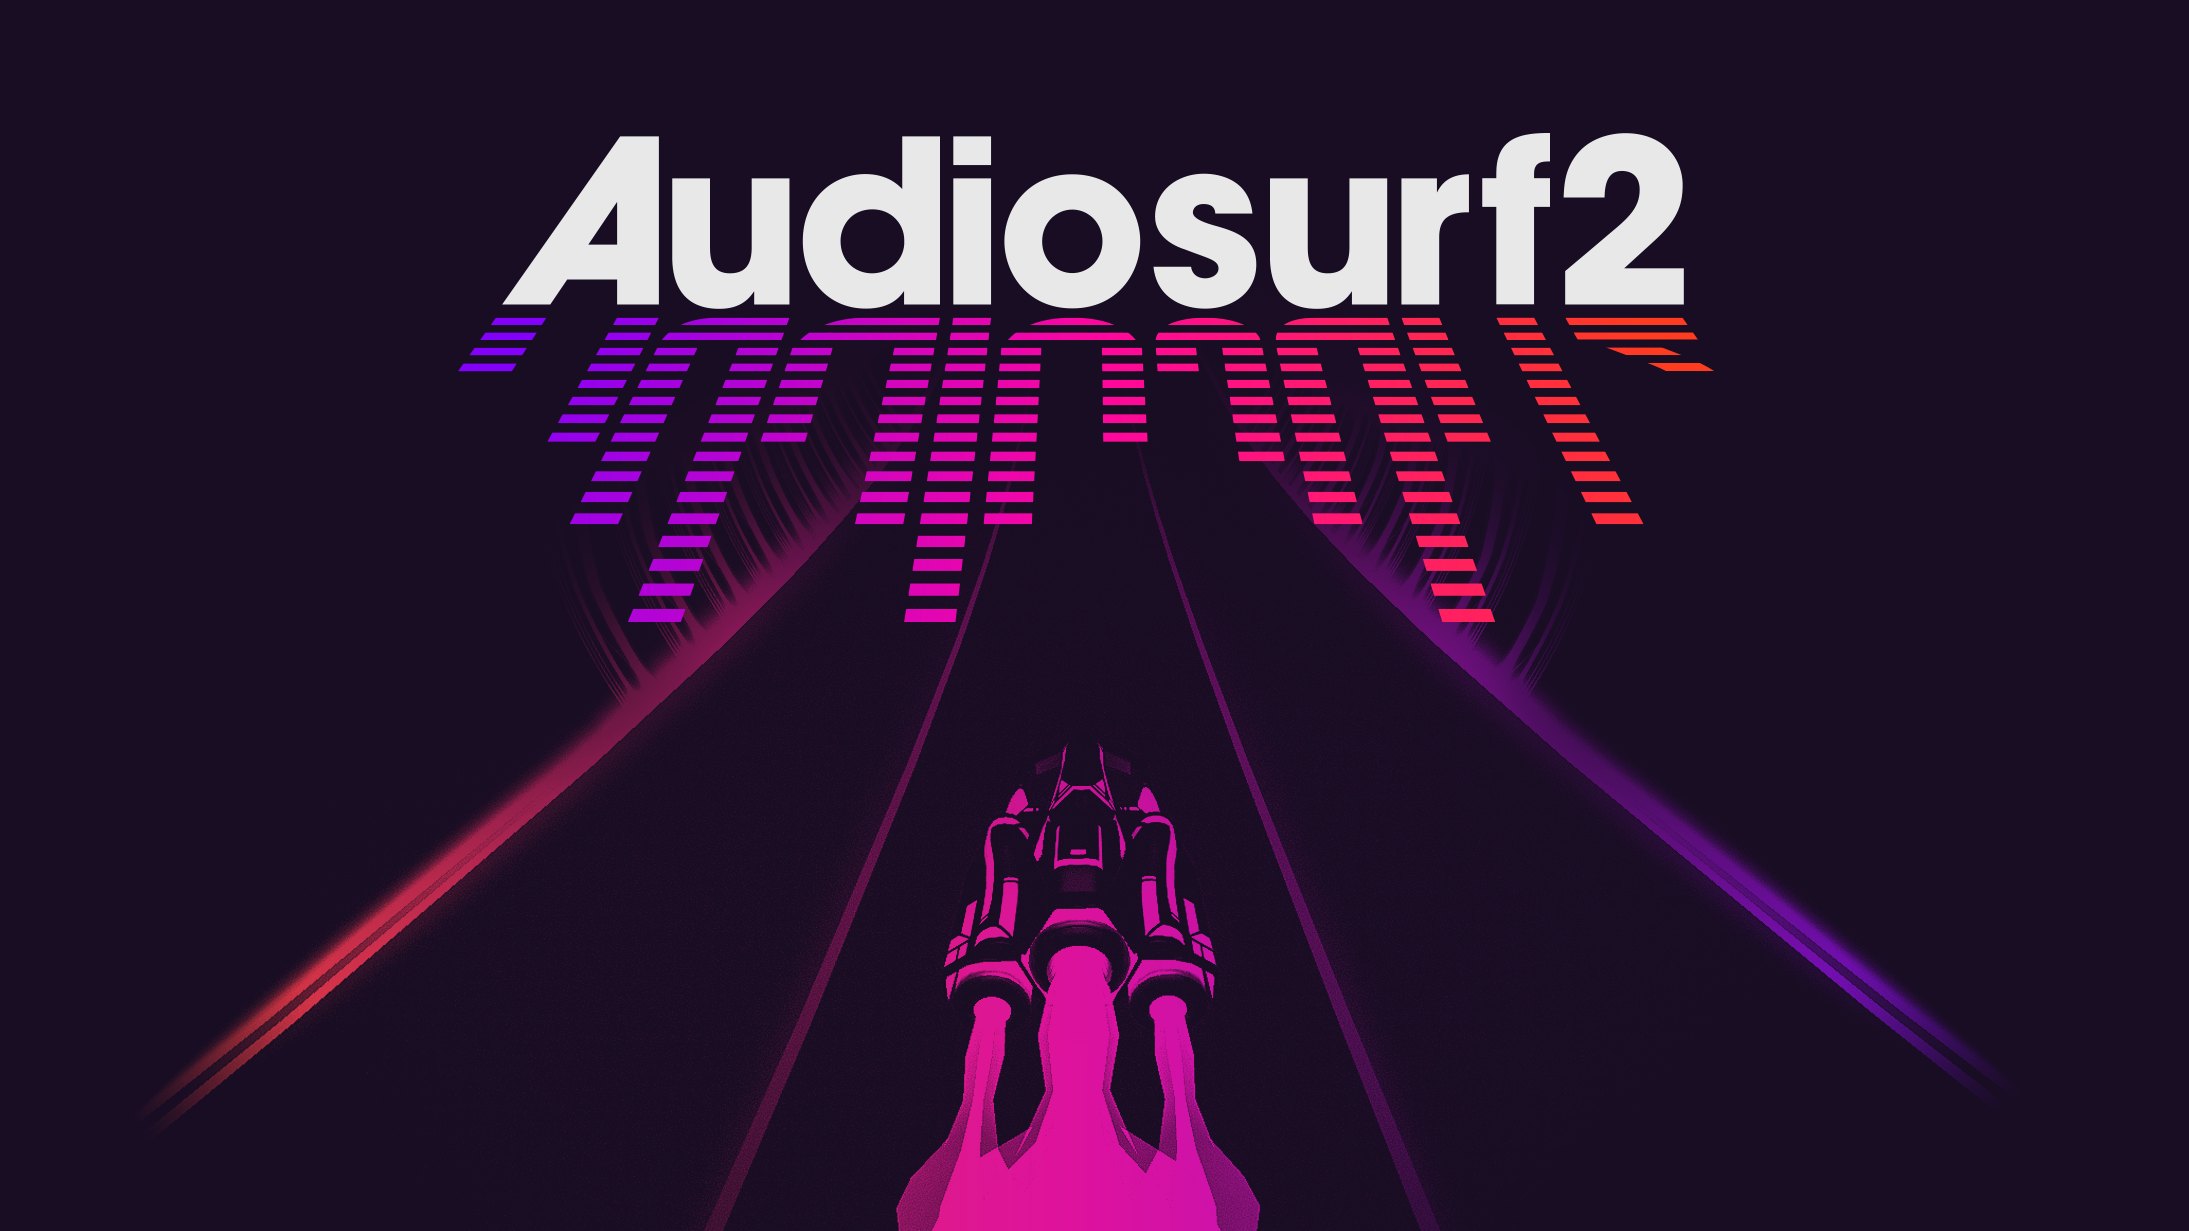 Audiosurf 2 steam not found на пиратке